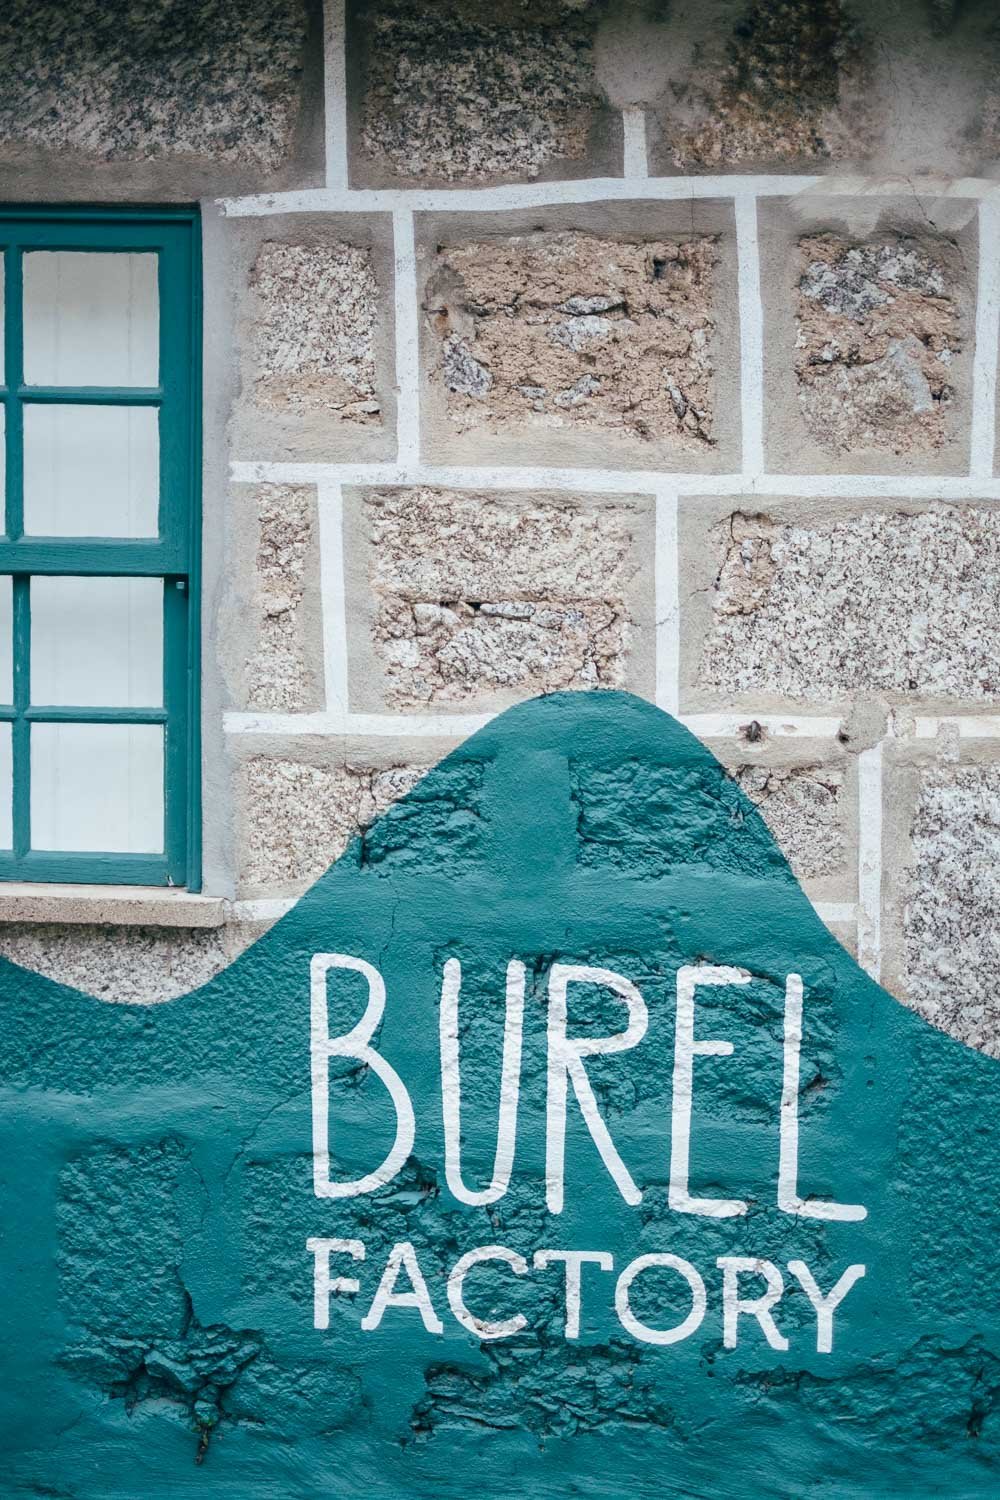 Burel Factory - Manteigas - Serra da Estrela